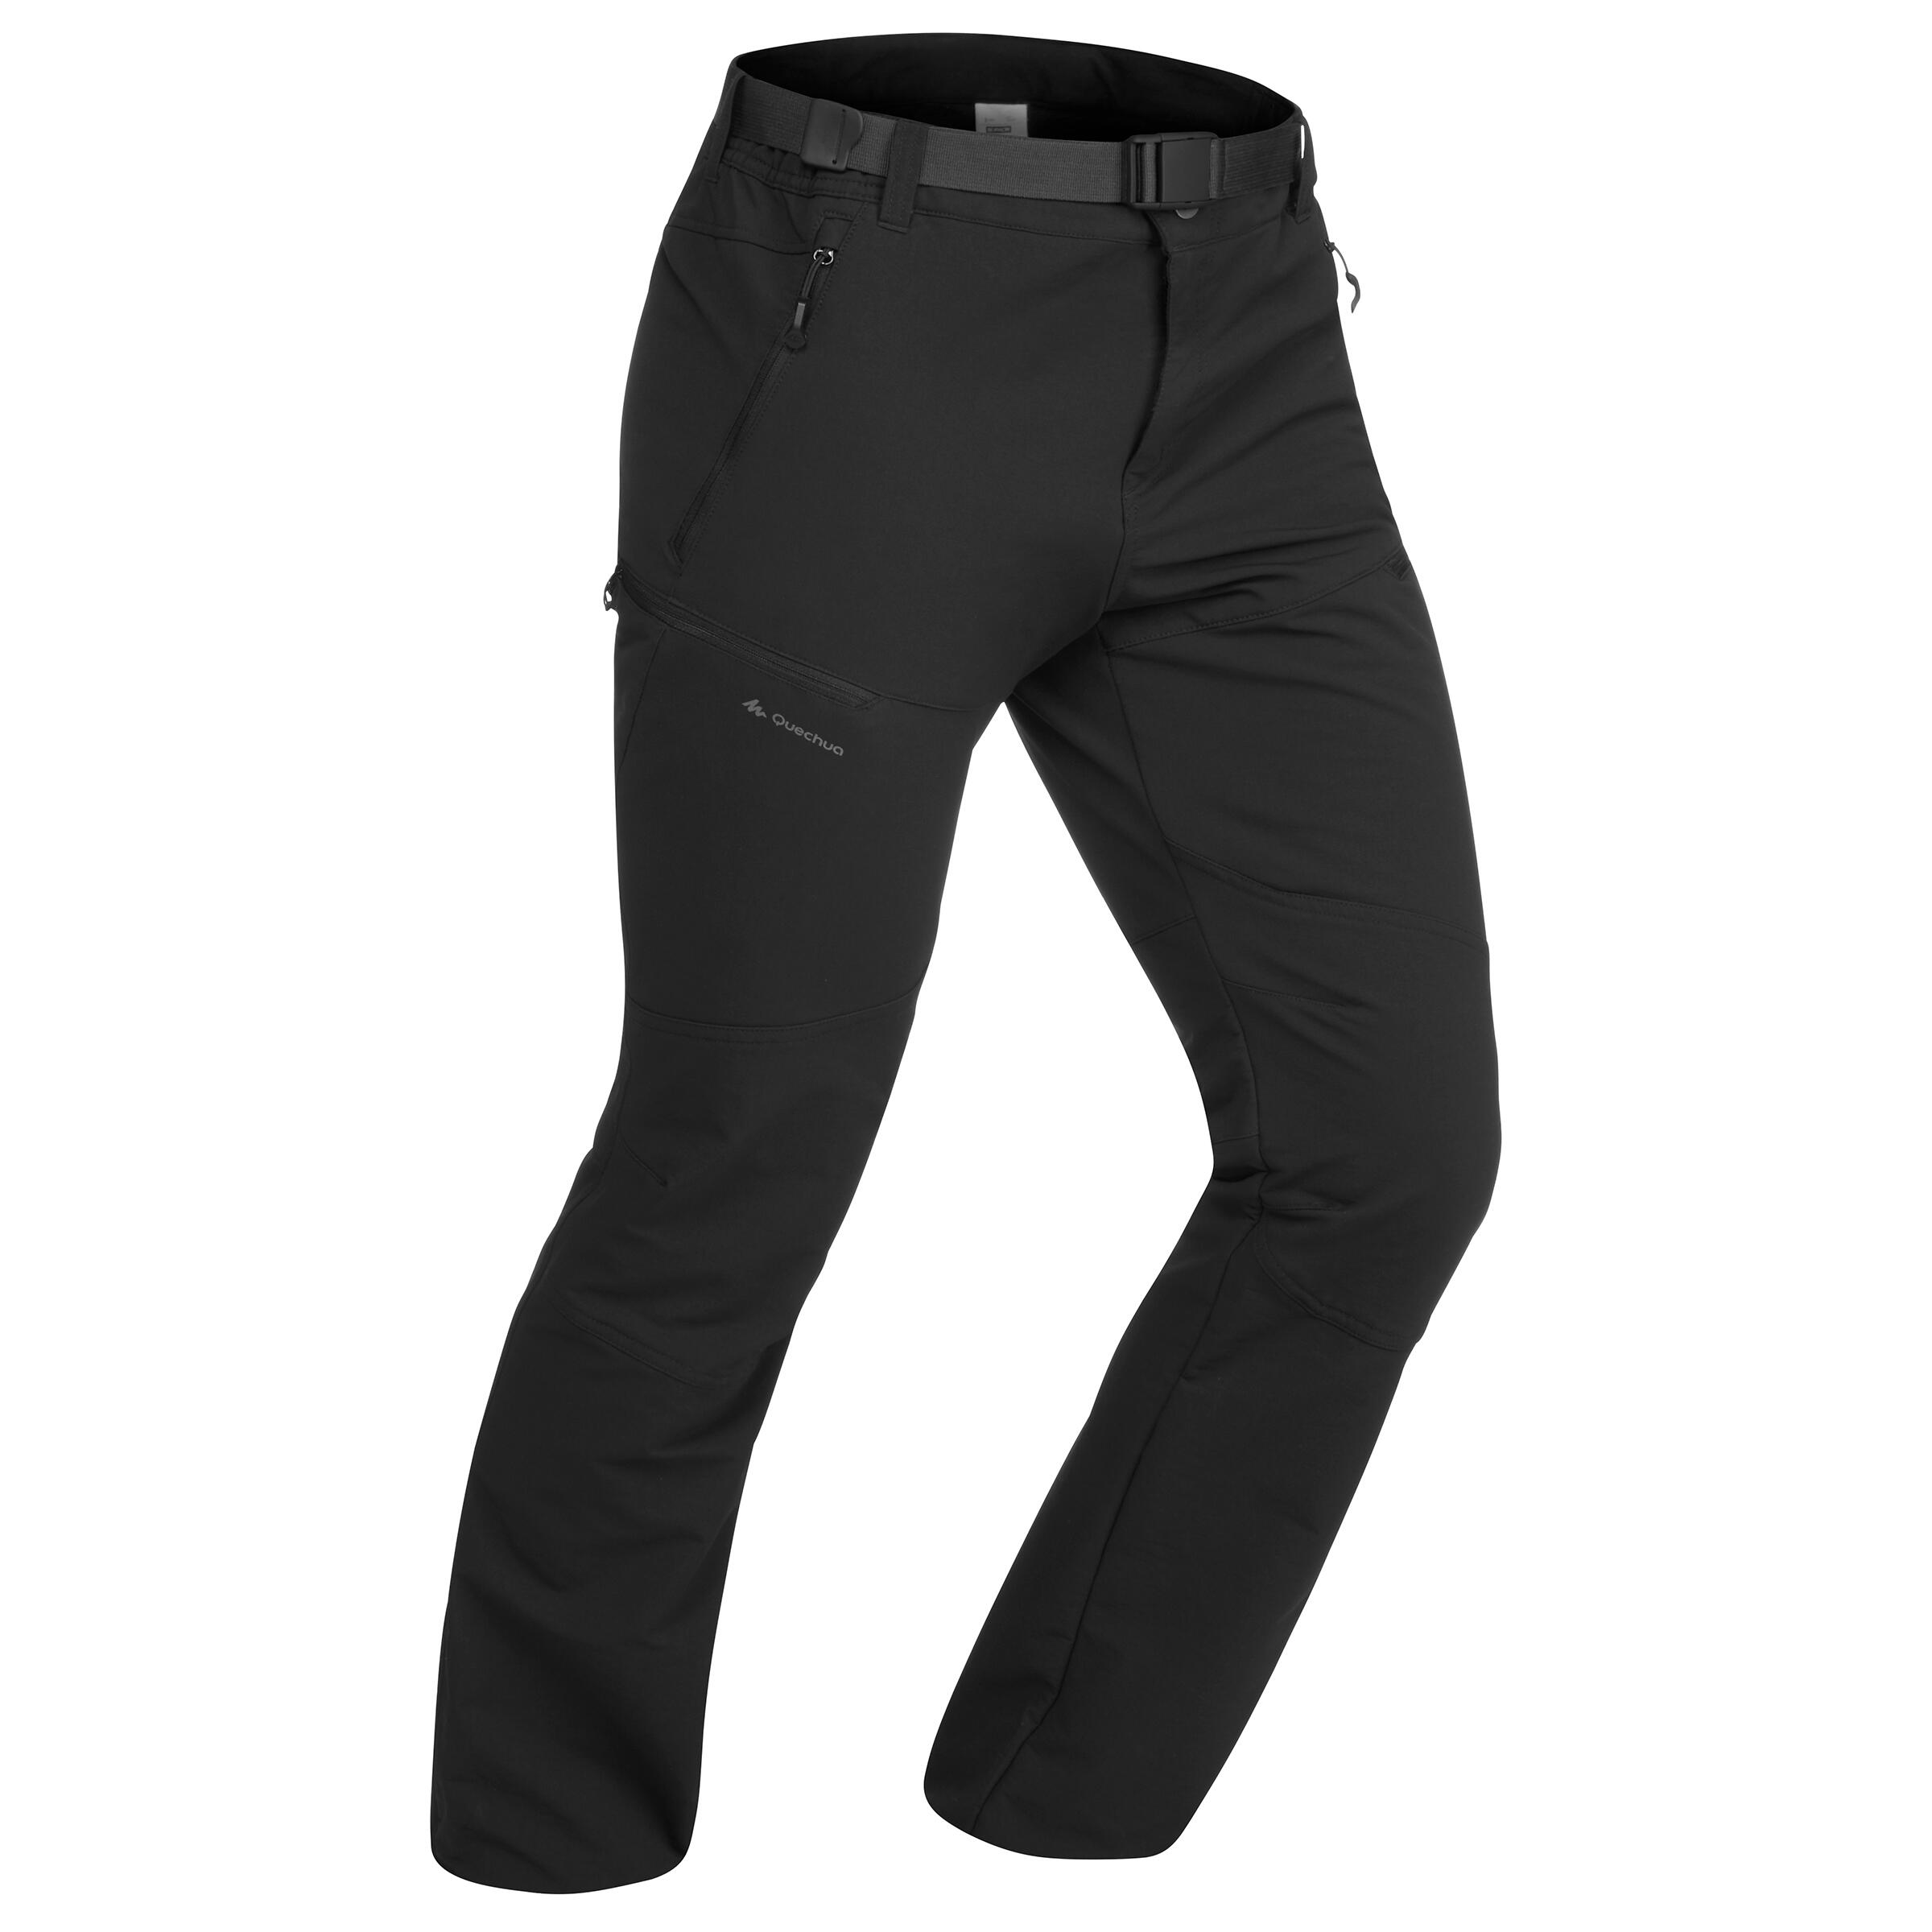 Buy Women's Dark Grey Mountain Trekking Resistant Trousers Online |  Decathlon